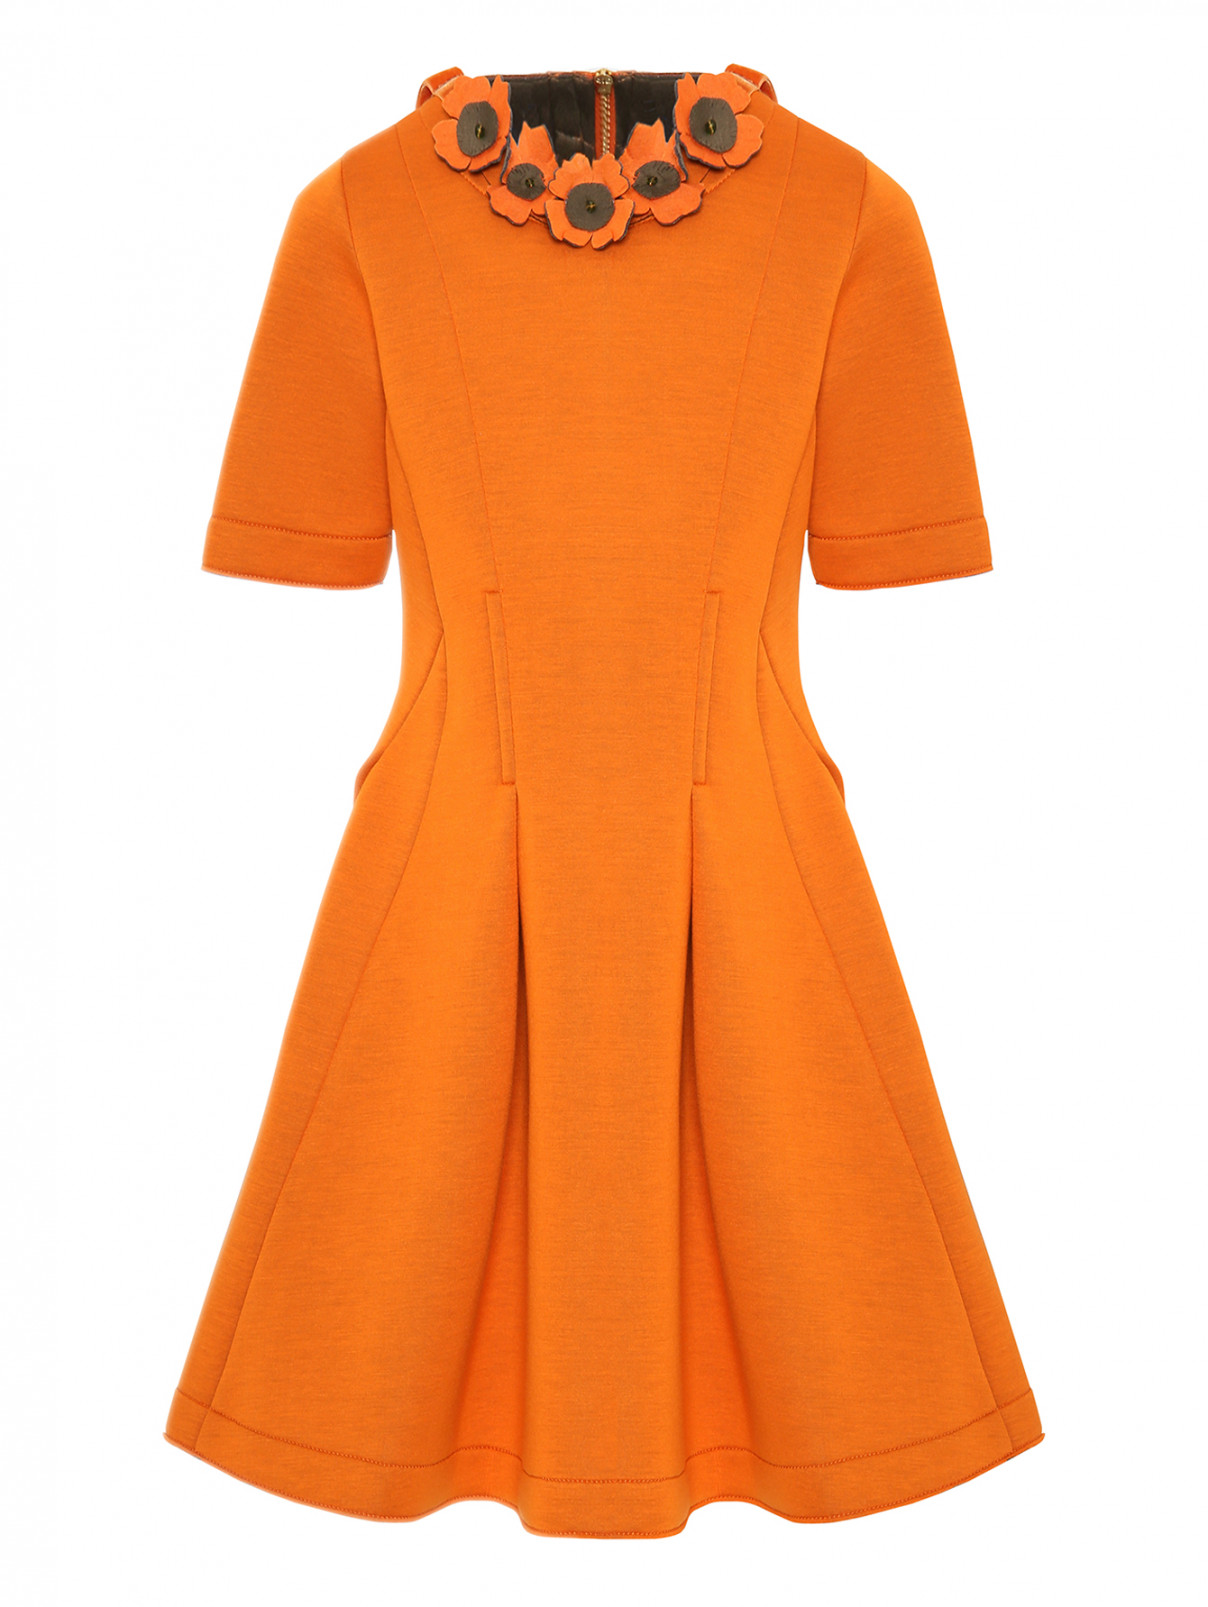 Платье из неопрена с цветочным декором MiMiSol  –  Общий вид  – Цвет:  Оранжевый